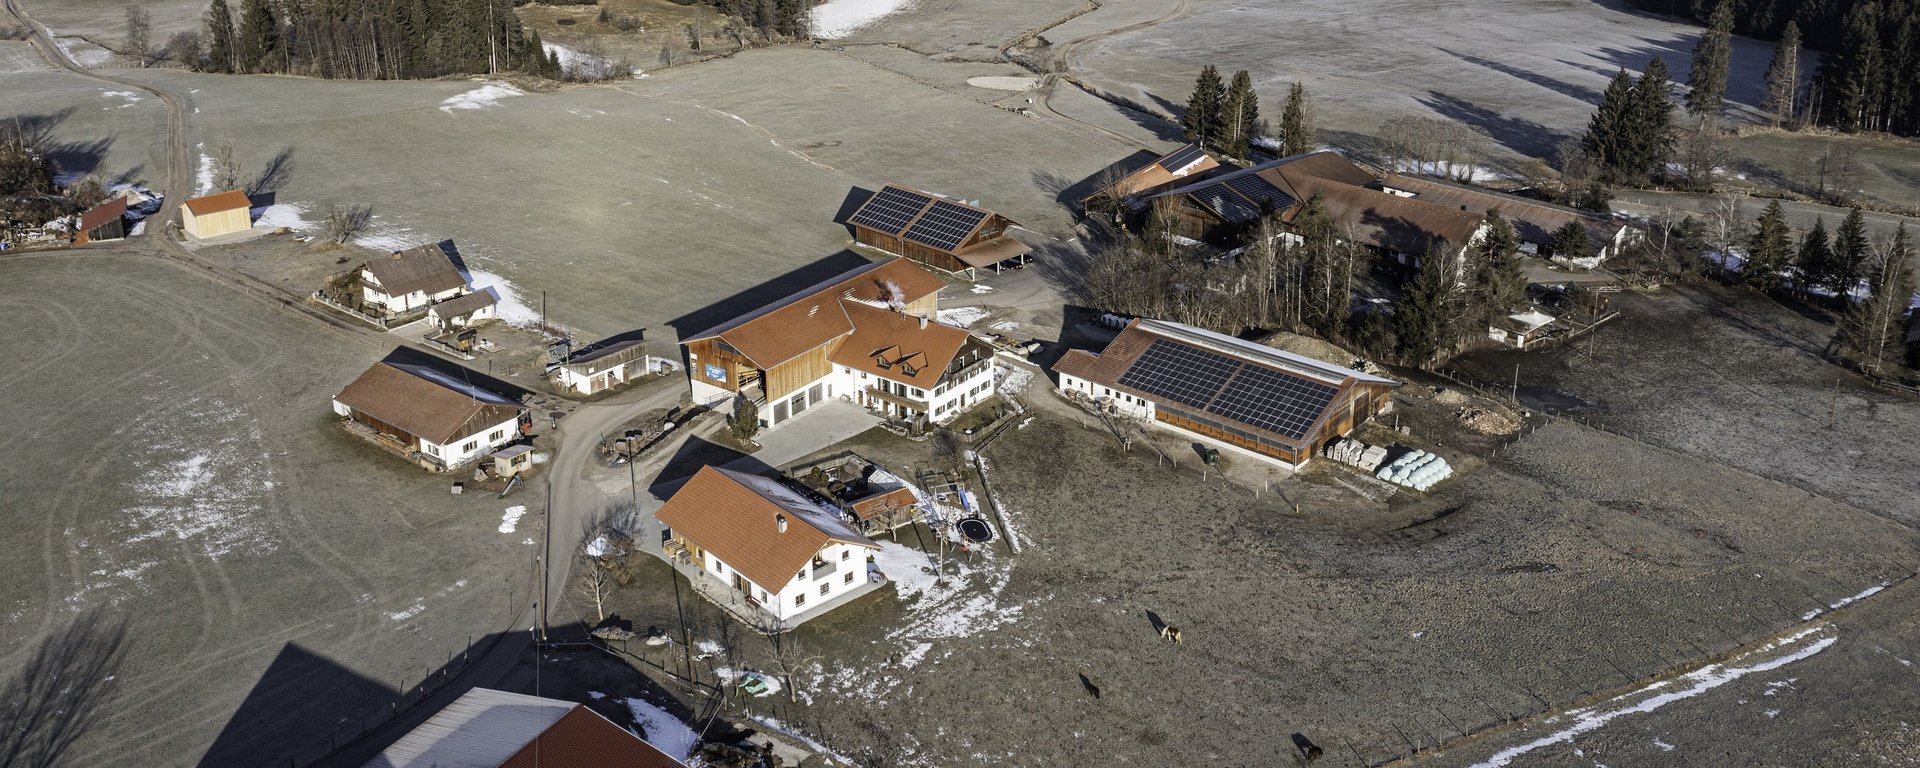 Luftaufnahme des Biohof Stadler in Unterthingau